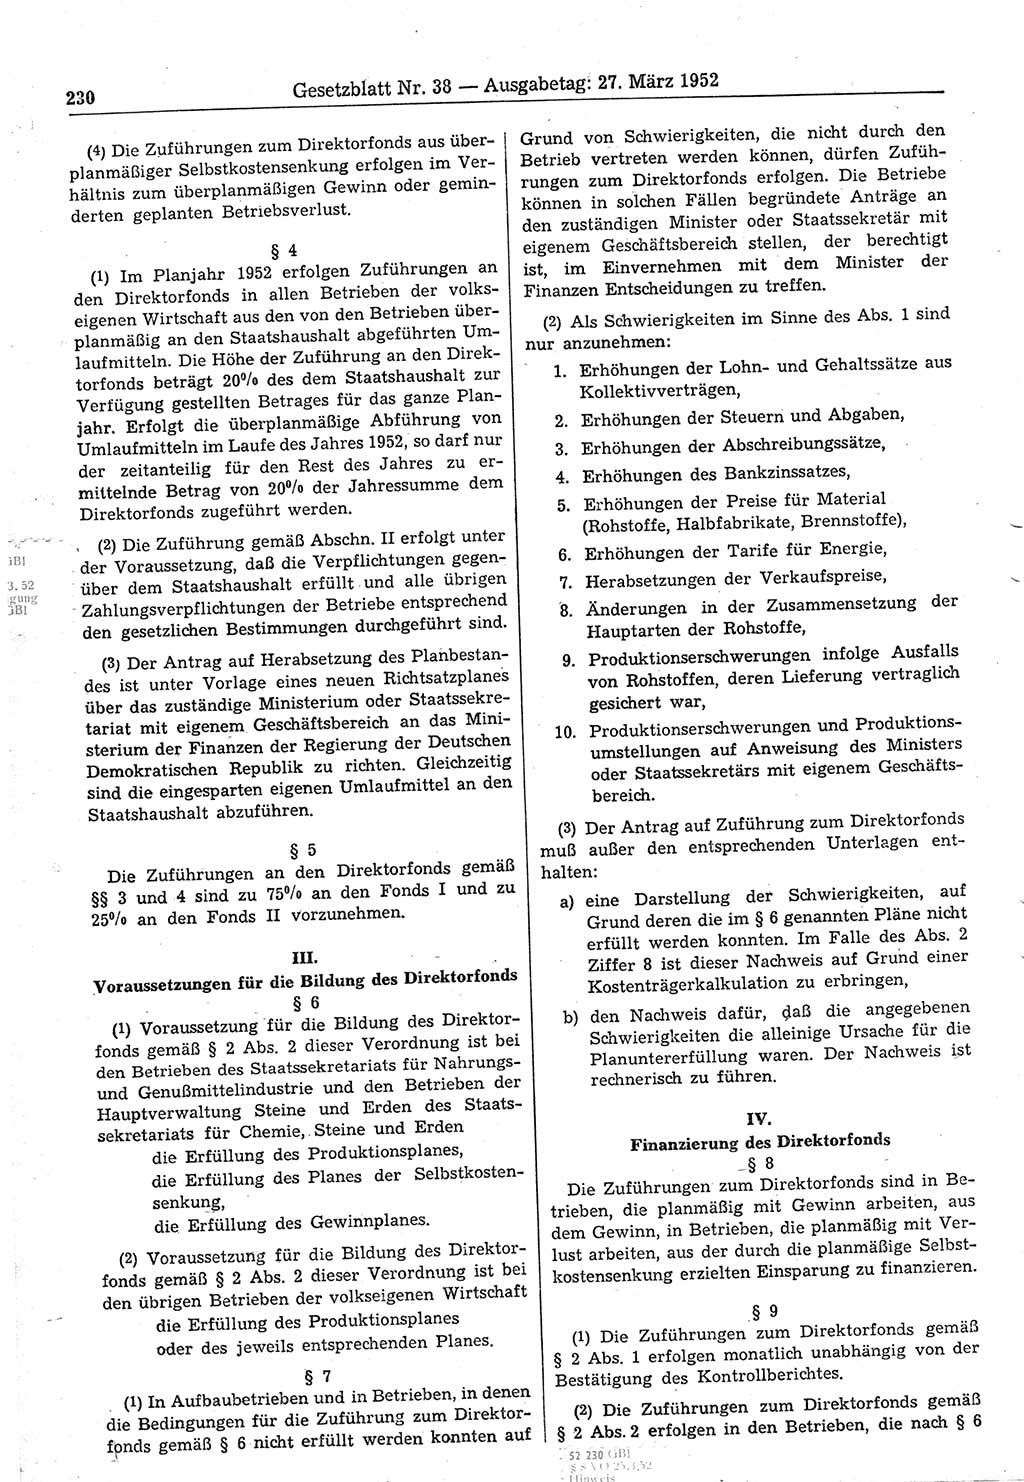 Gesetzblatt (GBl.) der Deutschen Demokratischen Republik (DDR) 1952, Seite 230 (GBl. DDR 1952, S. 230)